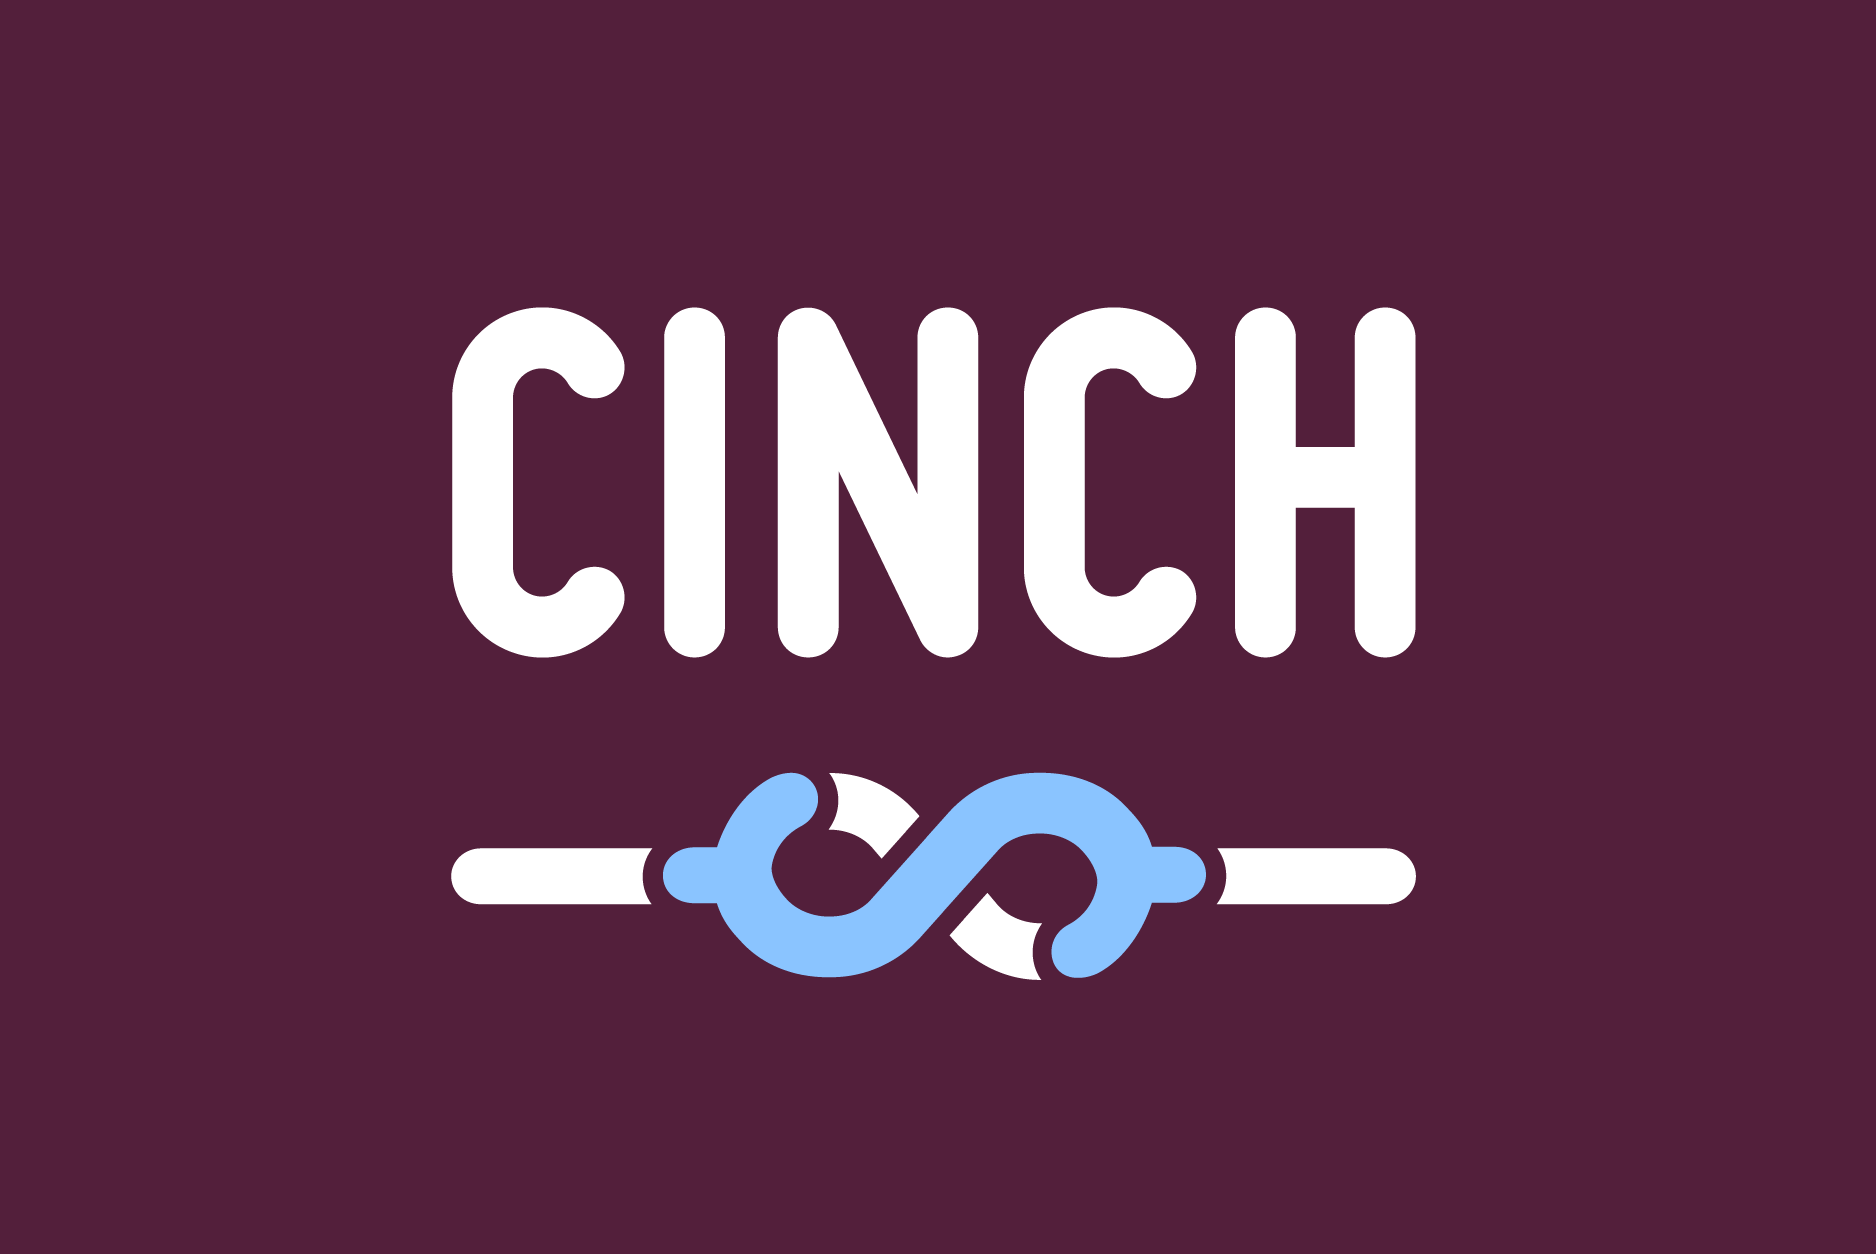 identity-08-cinch-financial-3800